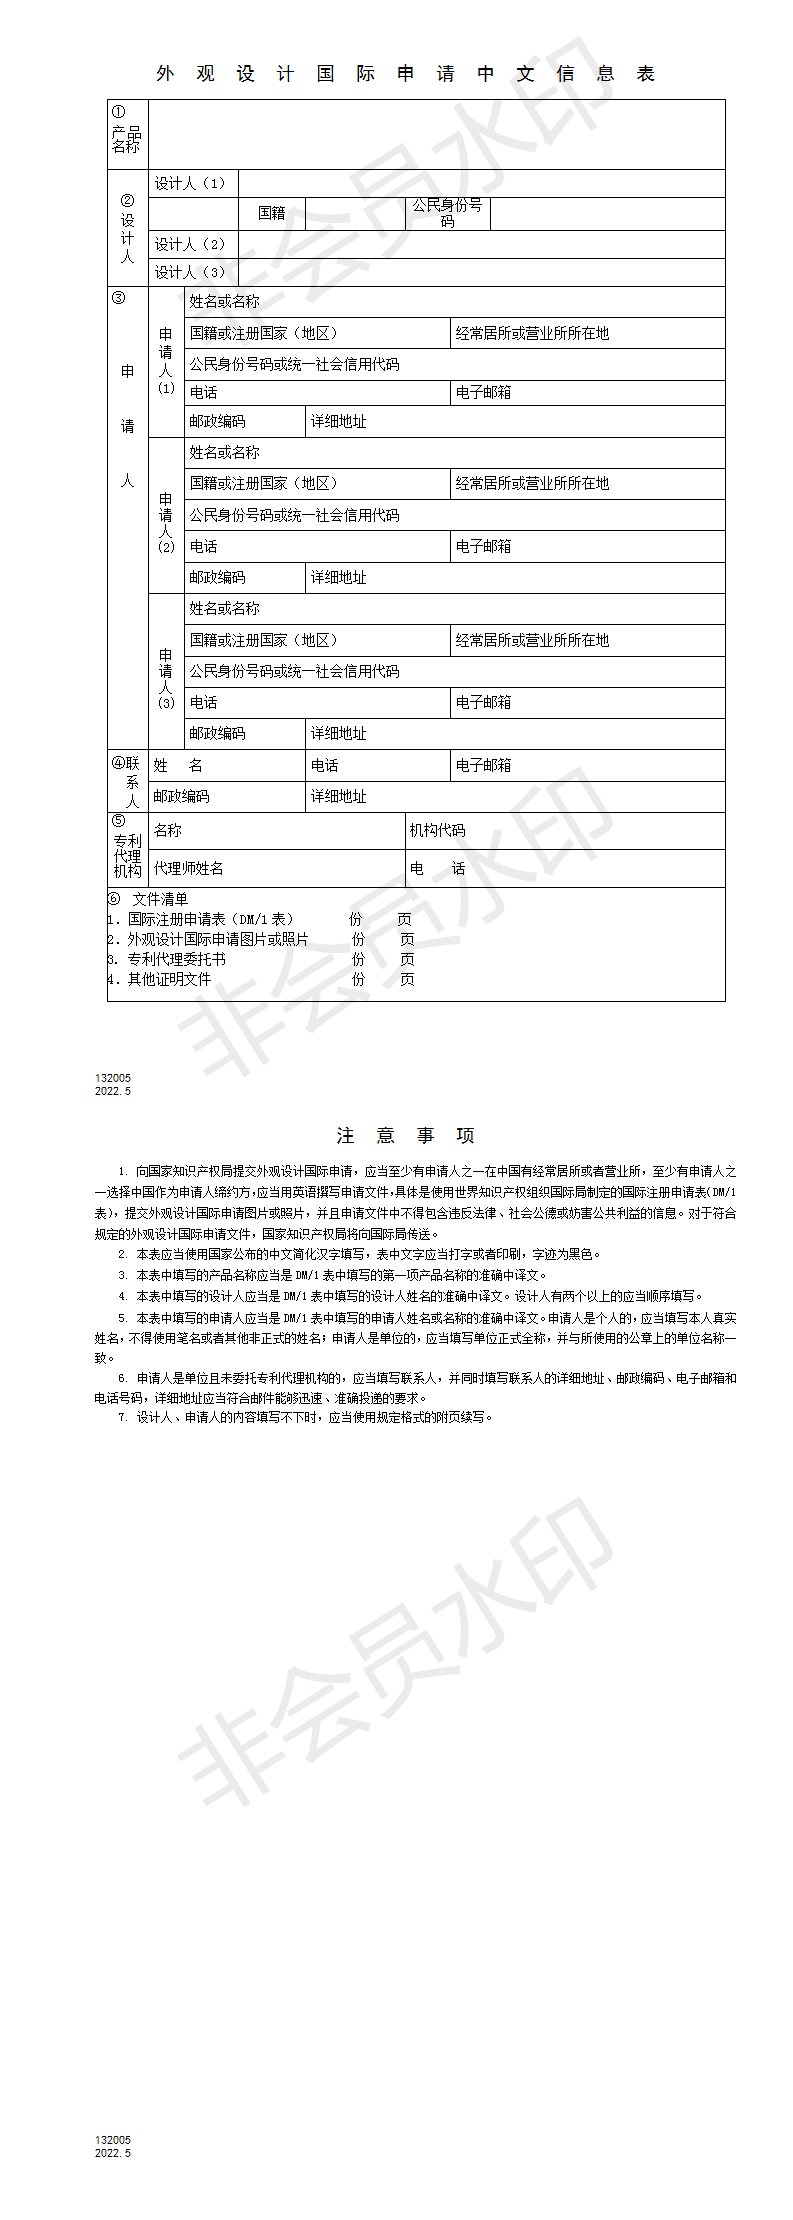 外观设计国际申请中文信息表_01